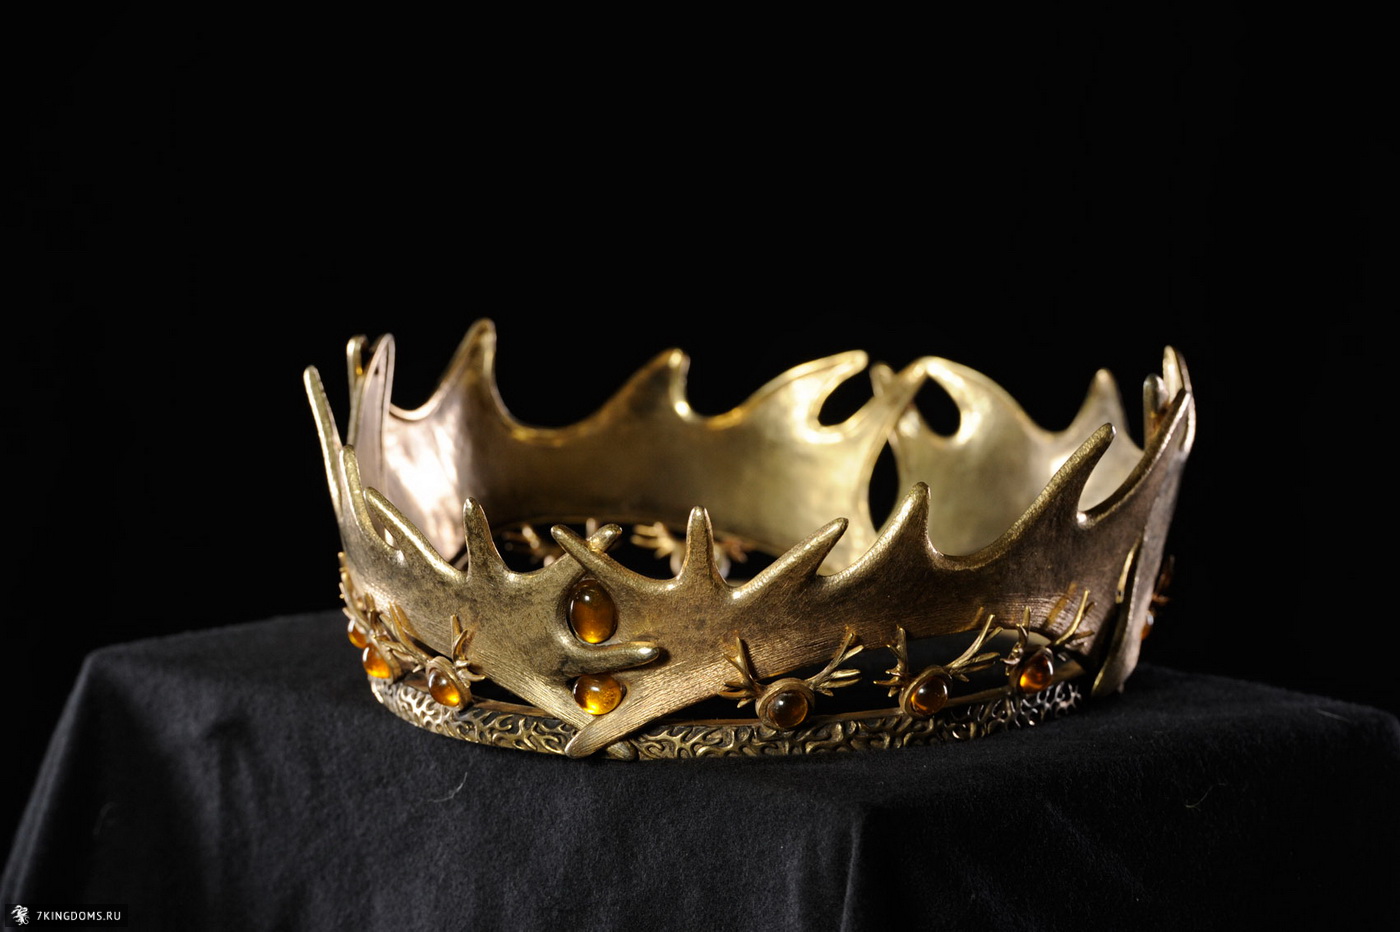 Robert's Crown - Game of Thrones Photo (31045400) - Fanpop